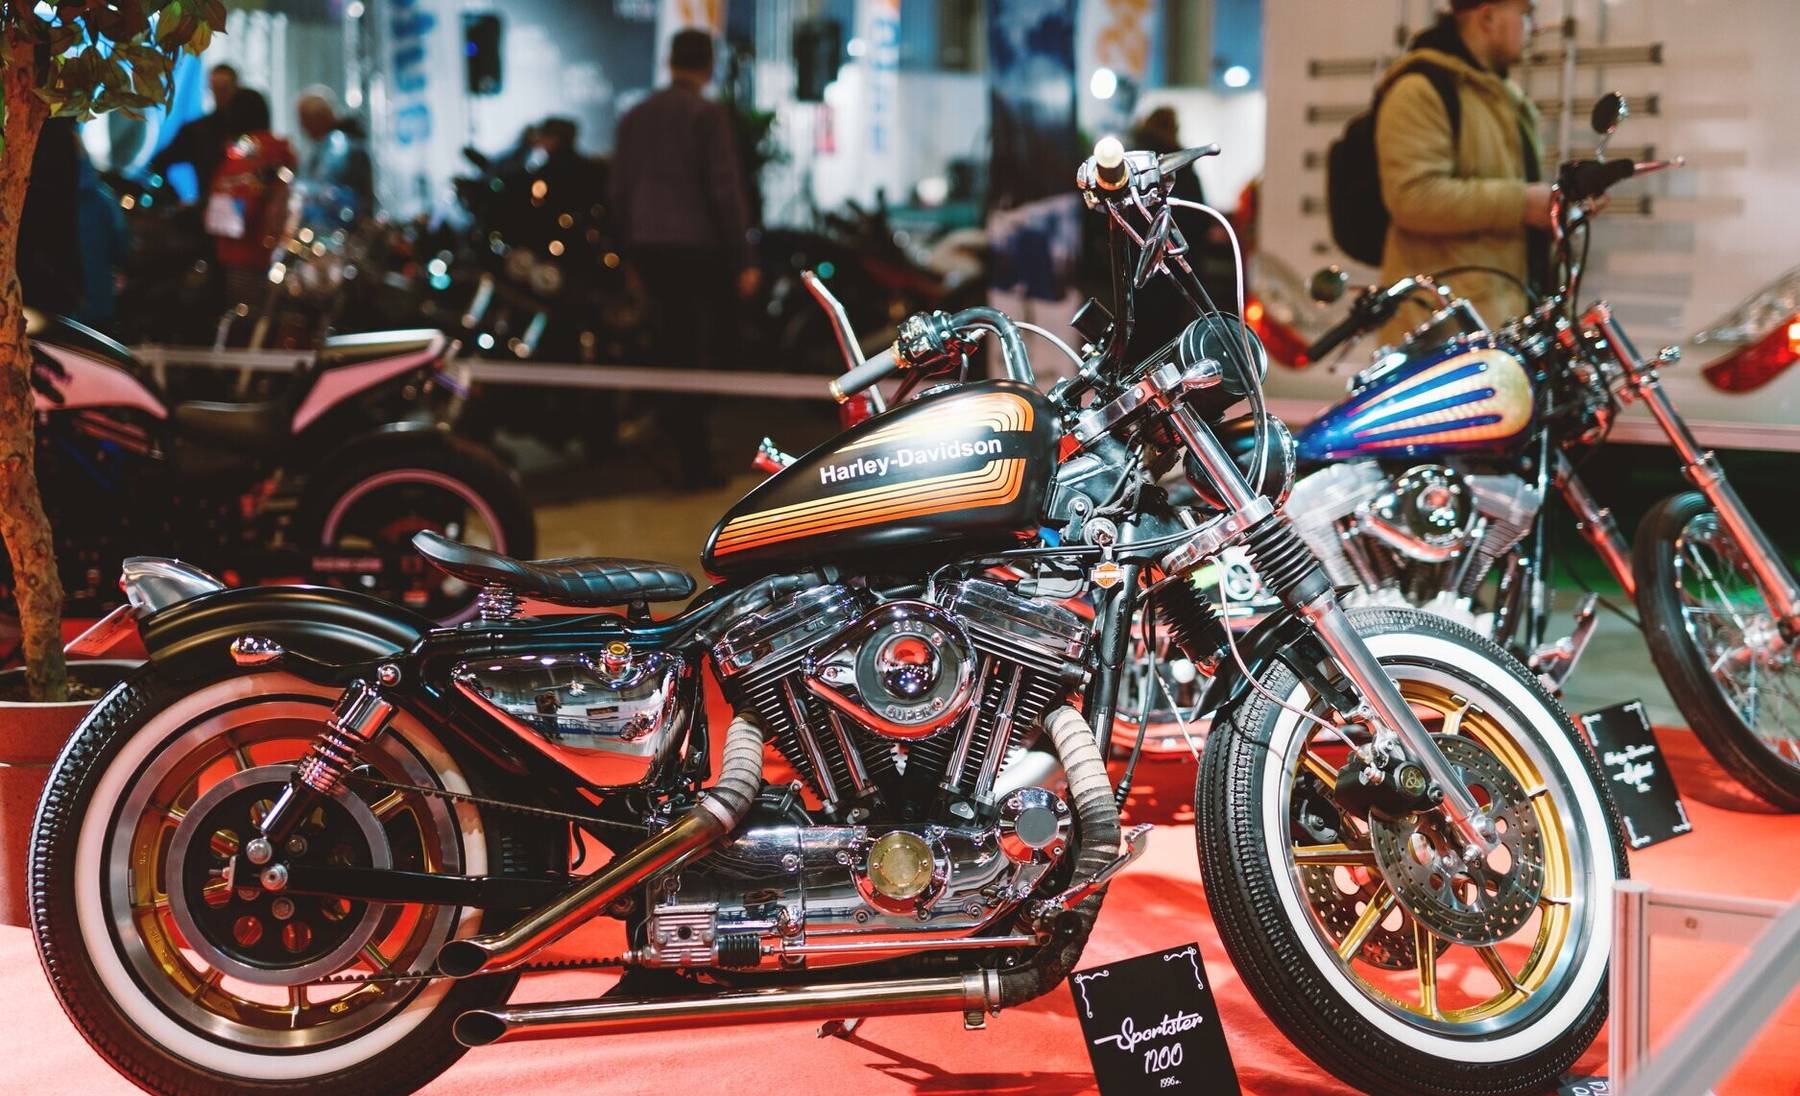 Motoexotica üks väljapanek on pühendatud Harley-Davidsoni 120. sünnipäevale